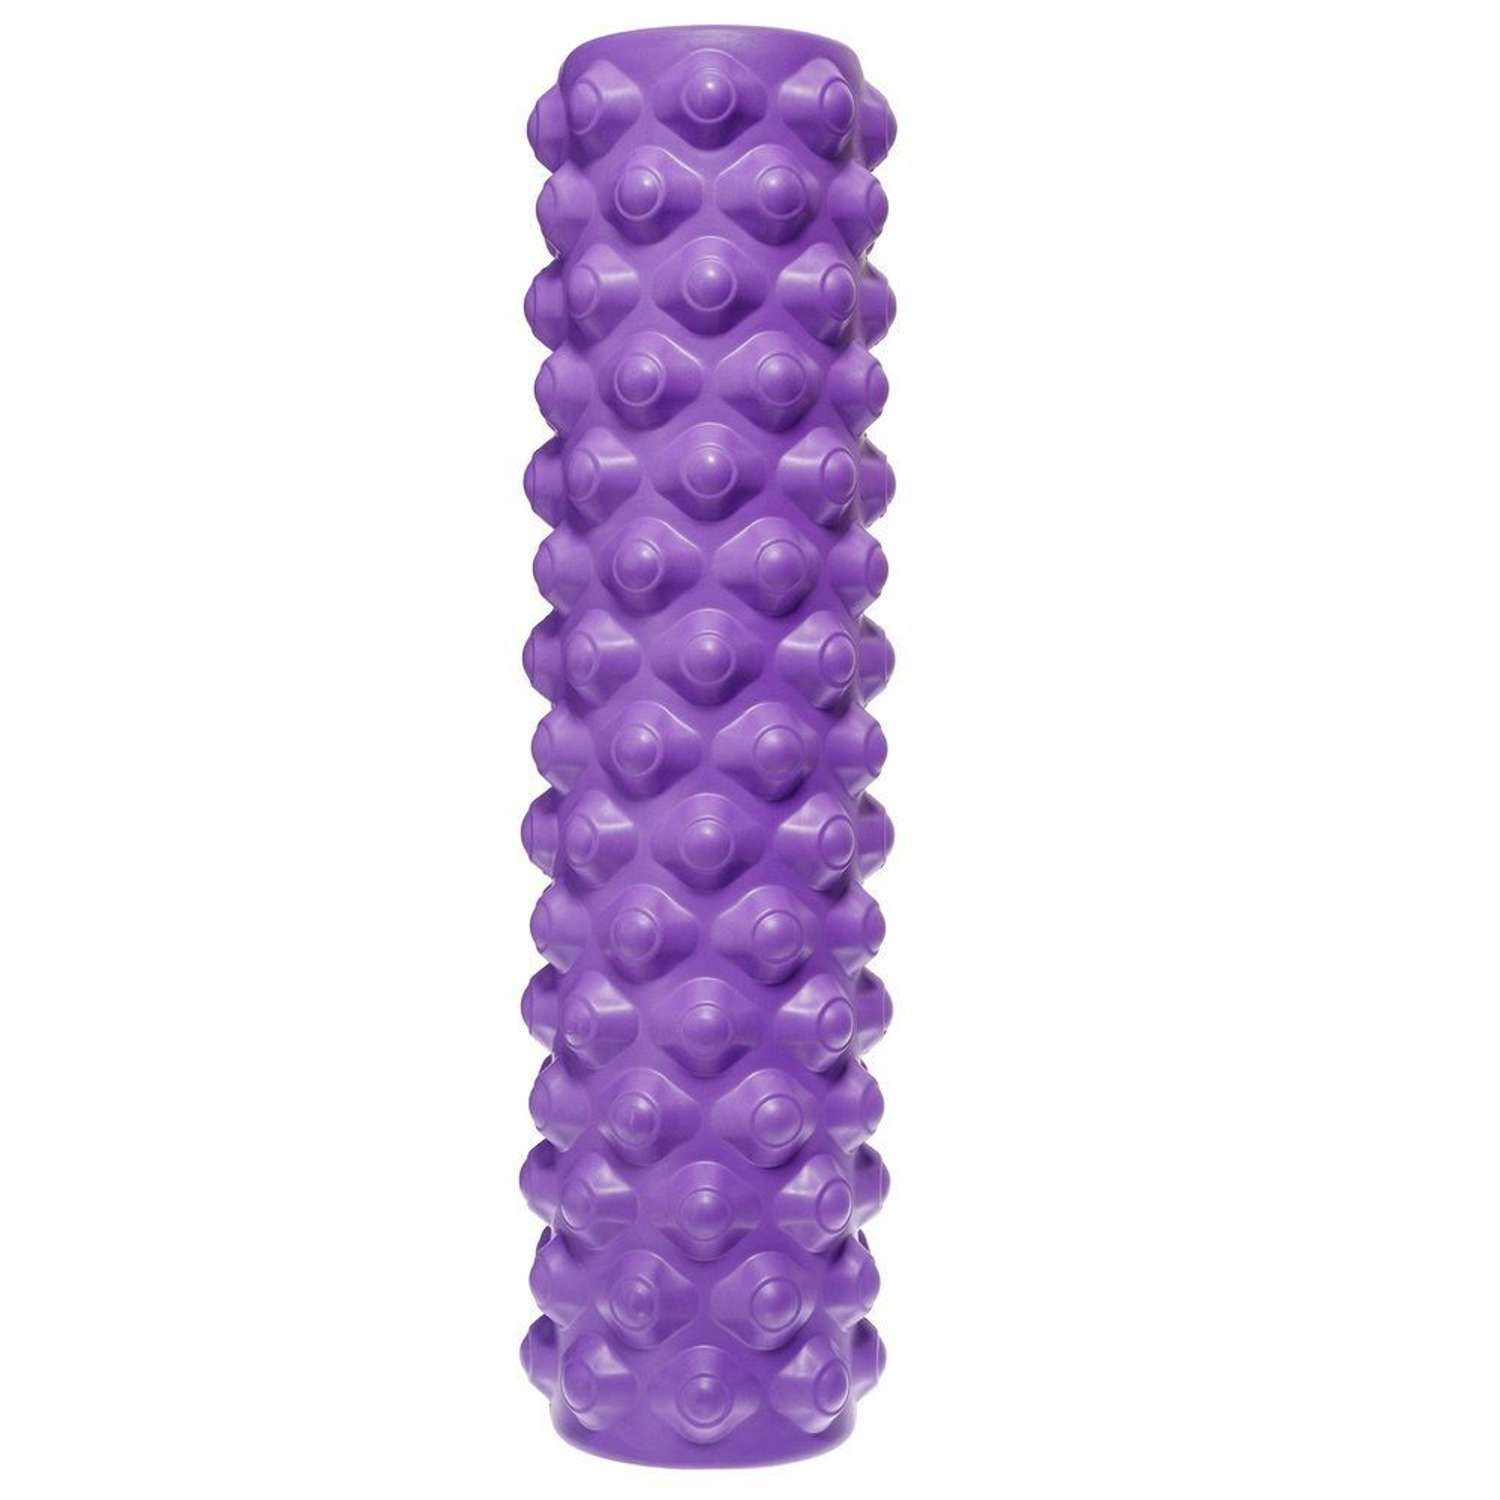 Ролик массажный STRONG BODY с шипами спортивный для фитнеса МФР йоги и пилатес 45 см х 12 см фиолетовый - фото 3